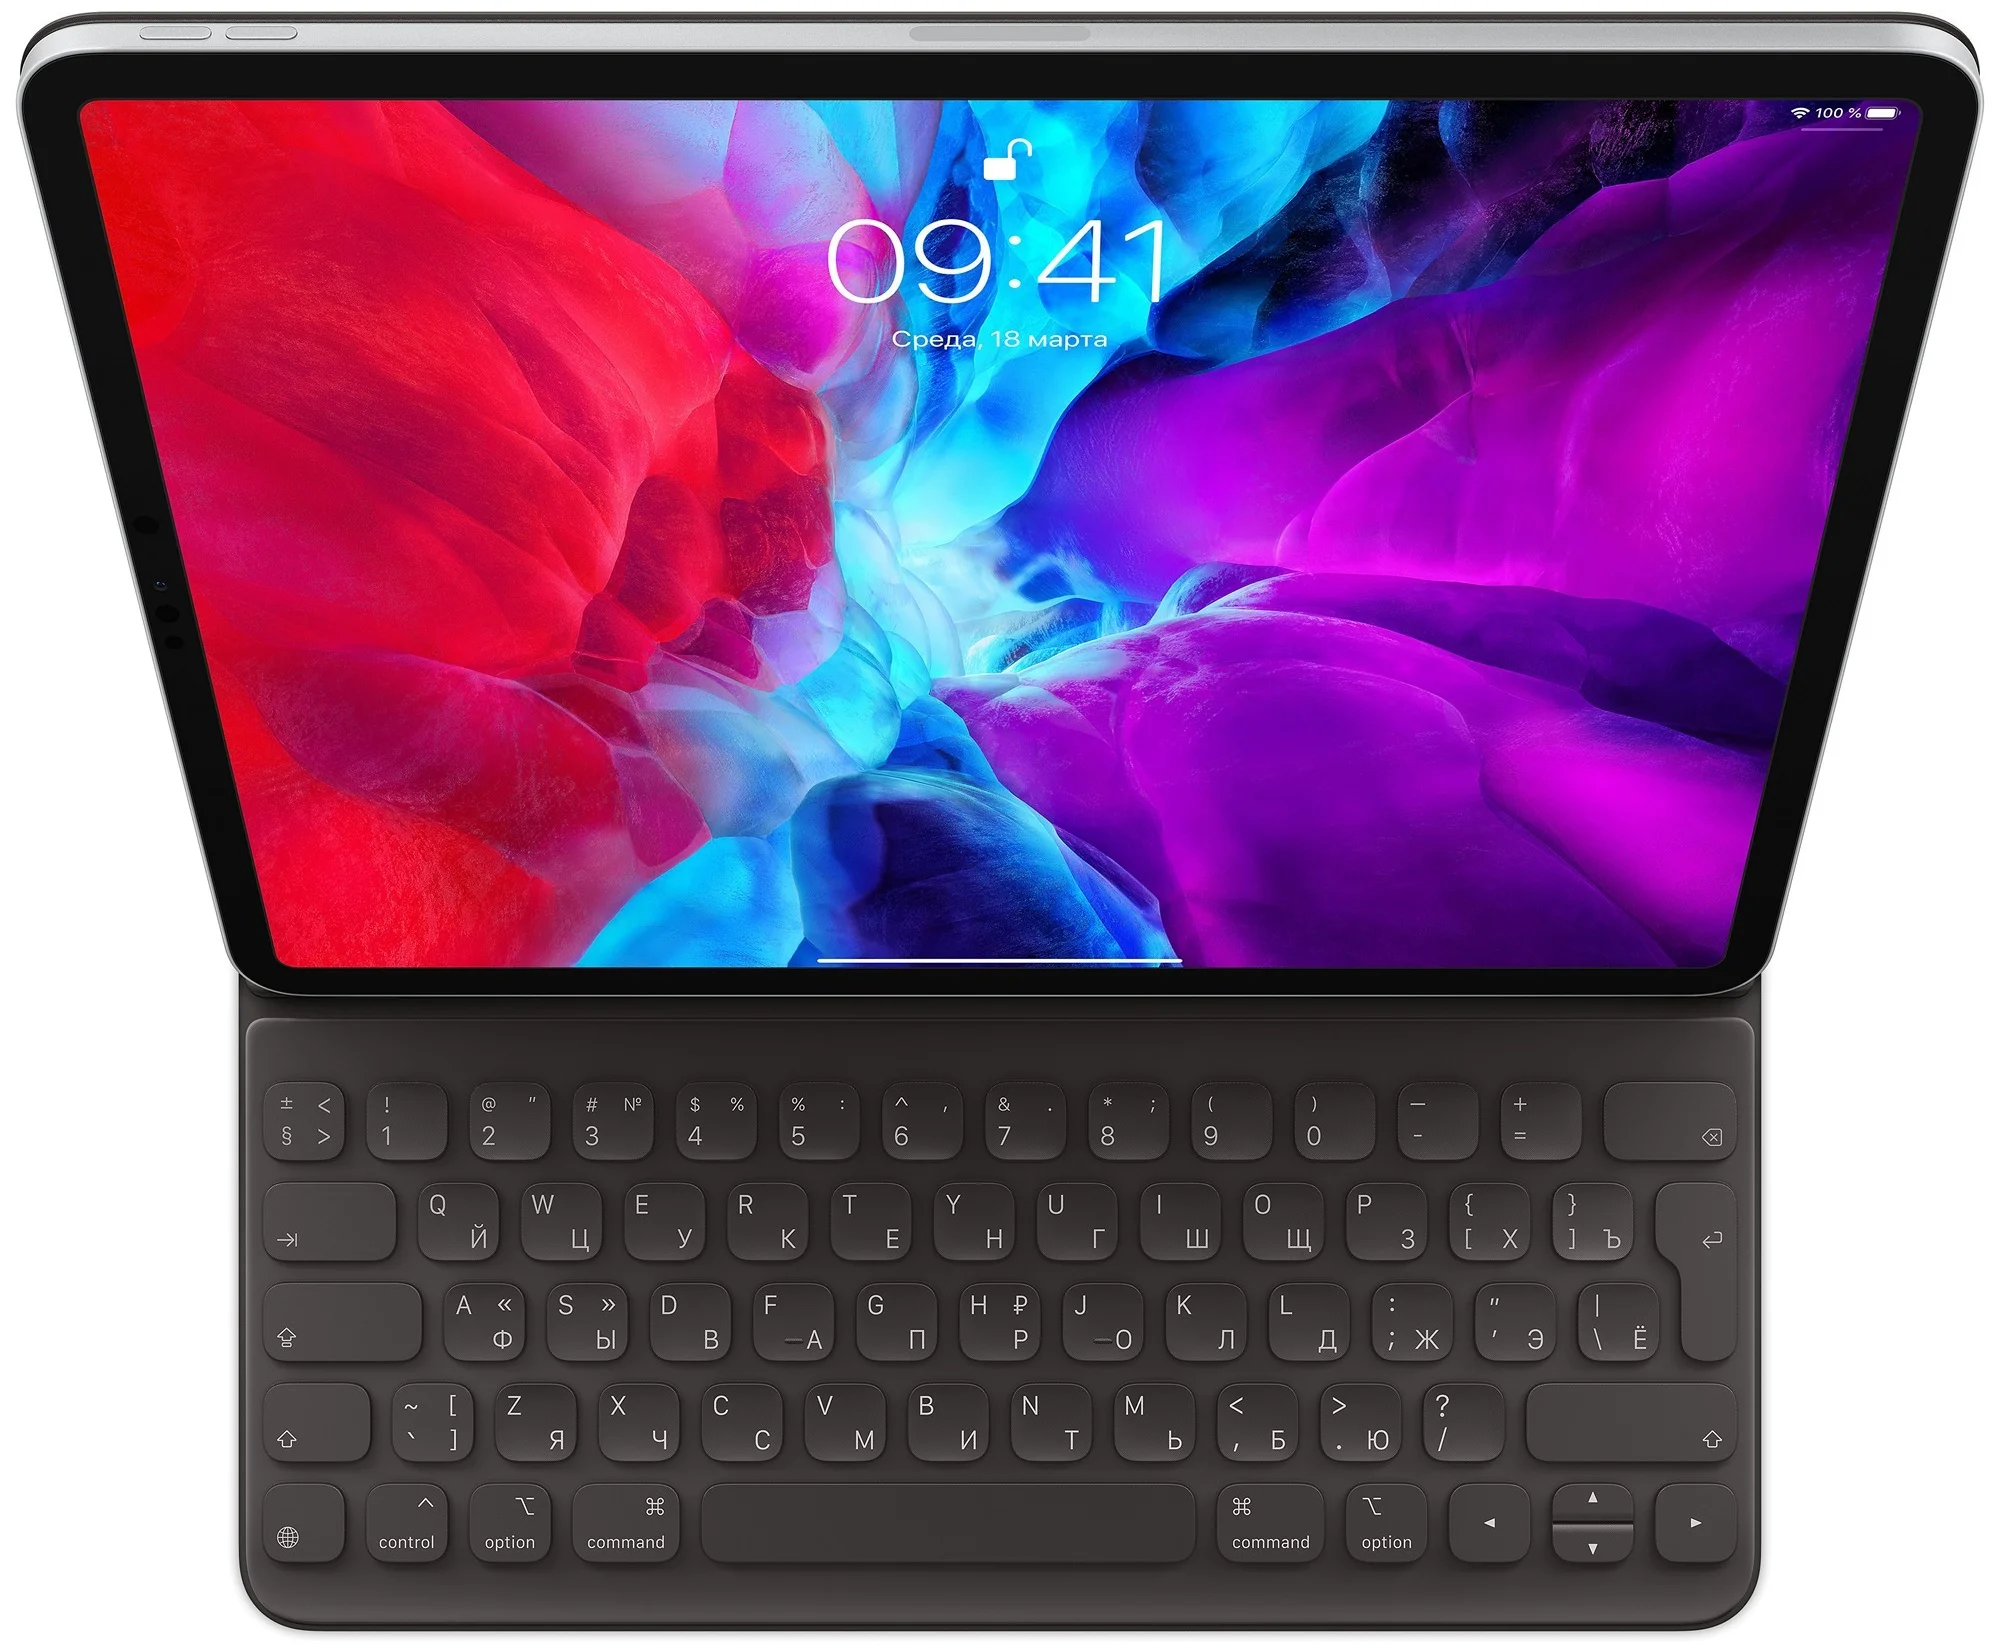 Клавиатура Apple Smart Keyboard Folio для iPad Pro 12,9 (2020) MXNL2